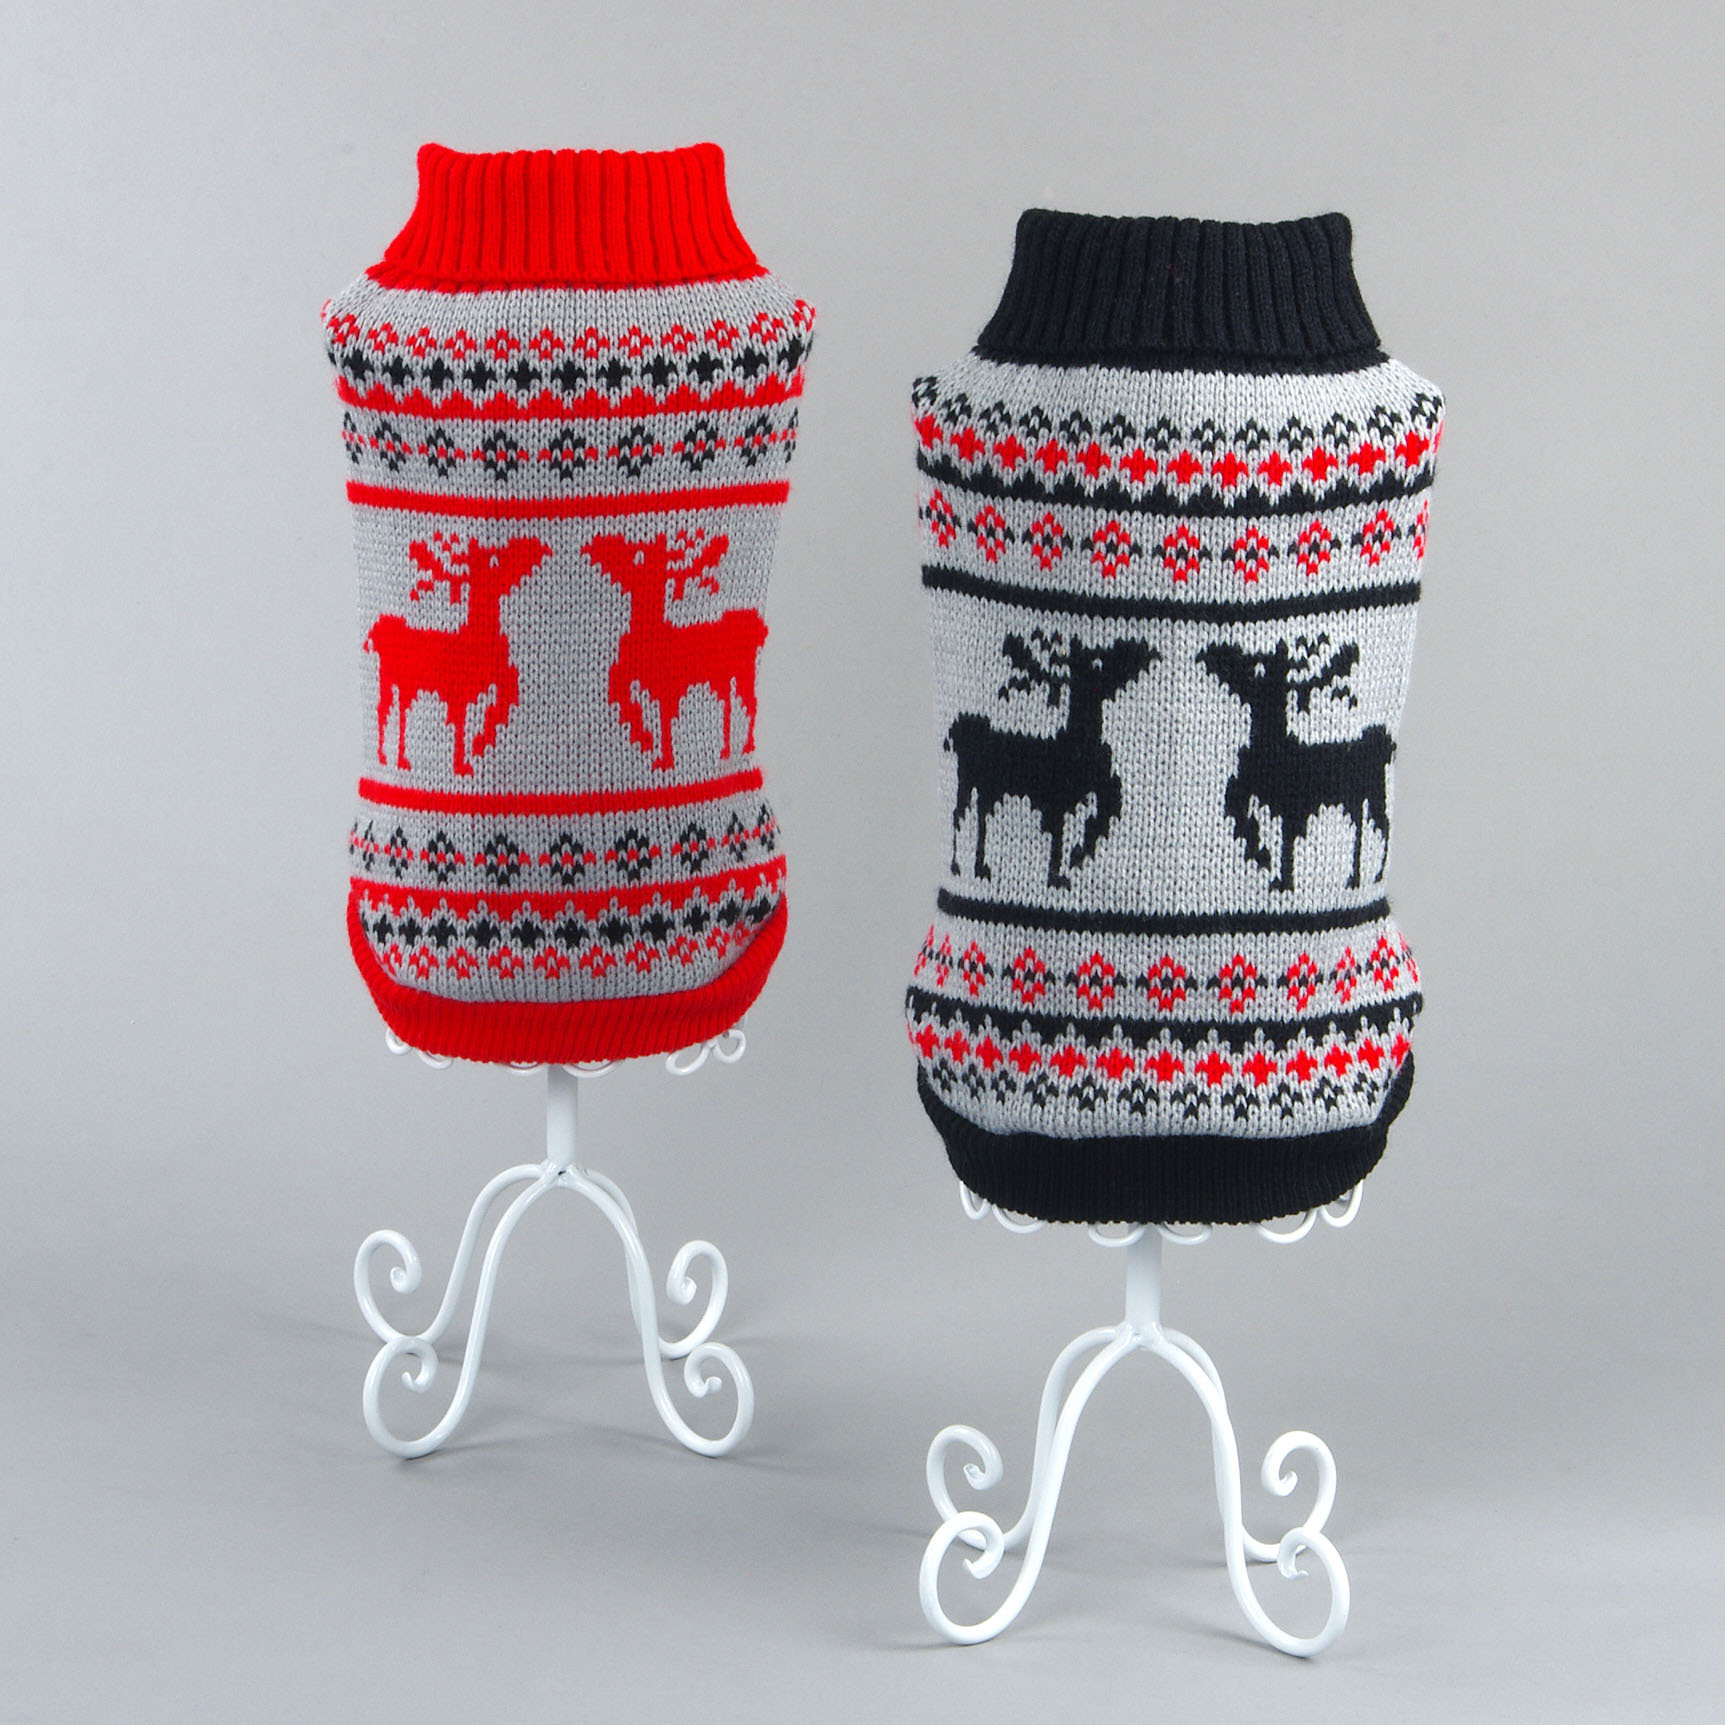 宠物毛衣圣诞可爱麋鹿图案猫咪服饰加厚保暖舒适针织狗狗毛衣服装